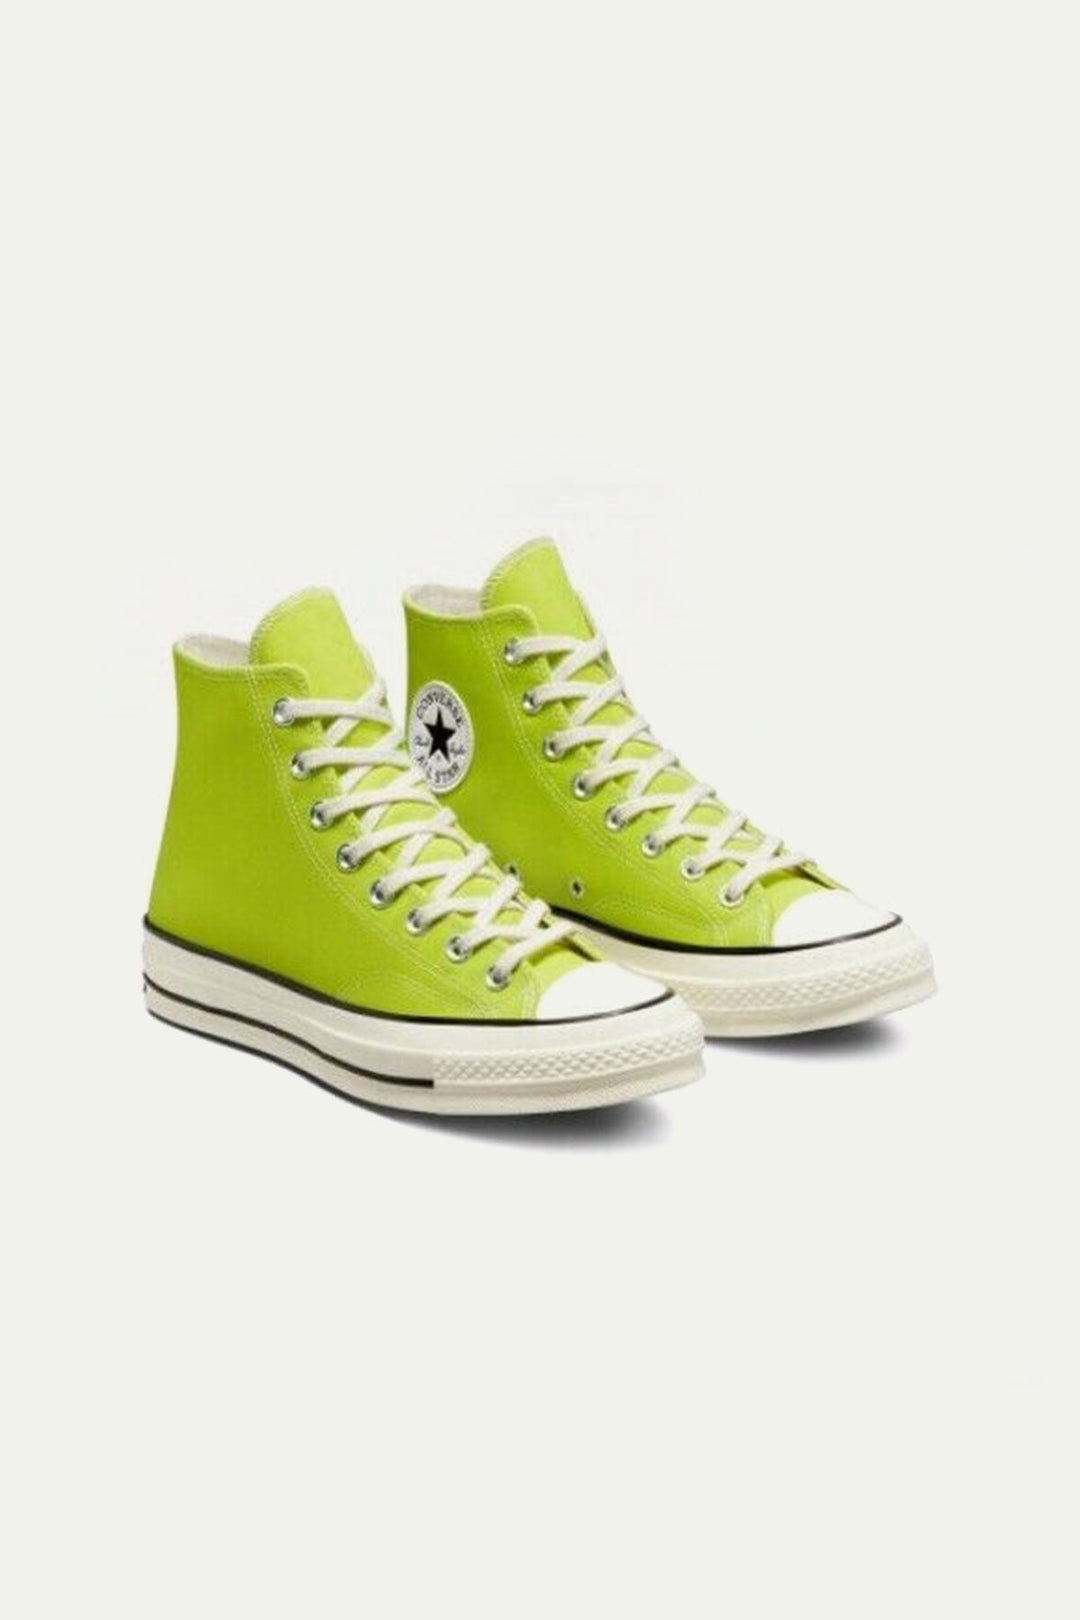 נעלי CHUCK 70 גבוהות בצבע ירוק ליים - Converse